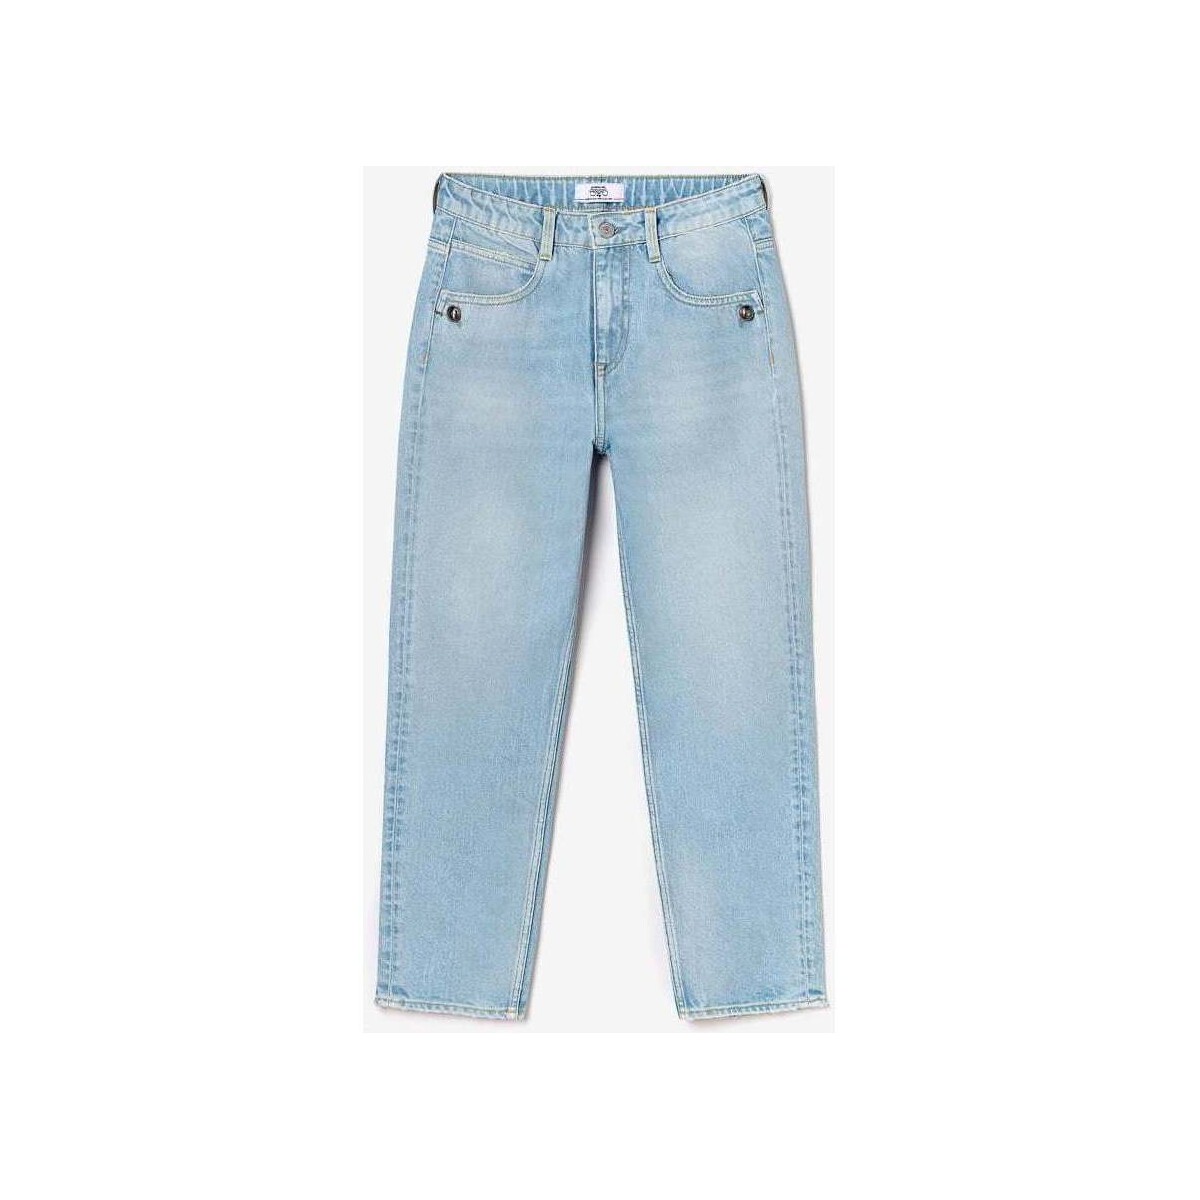 Le Temps des Cerises Bleu Lou cherry boyfit taille haute jeans bleu délavé KNqCrCW9